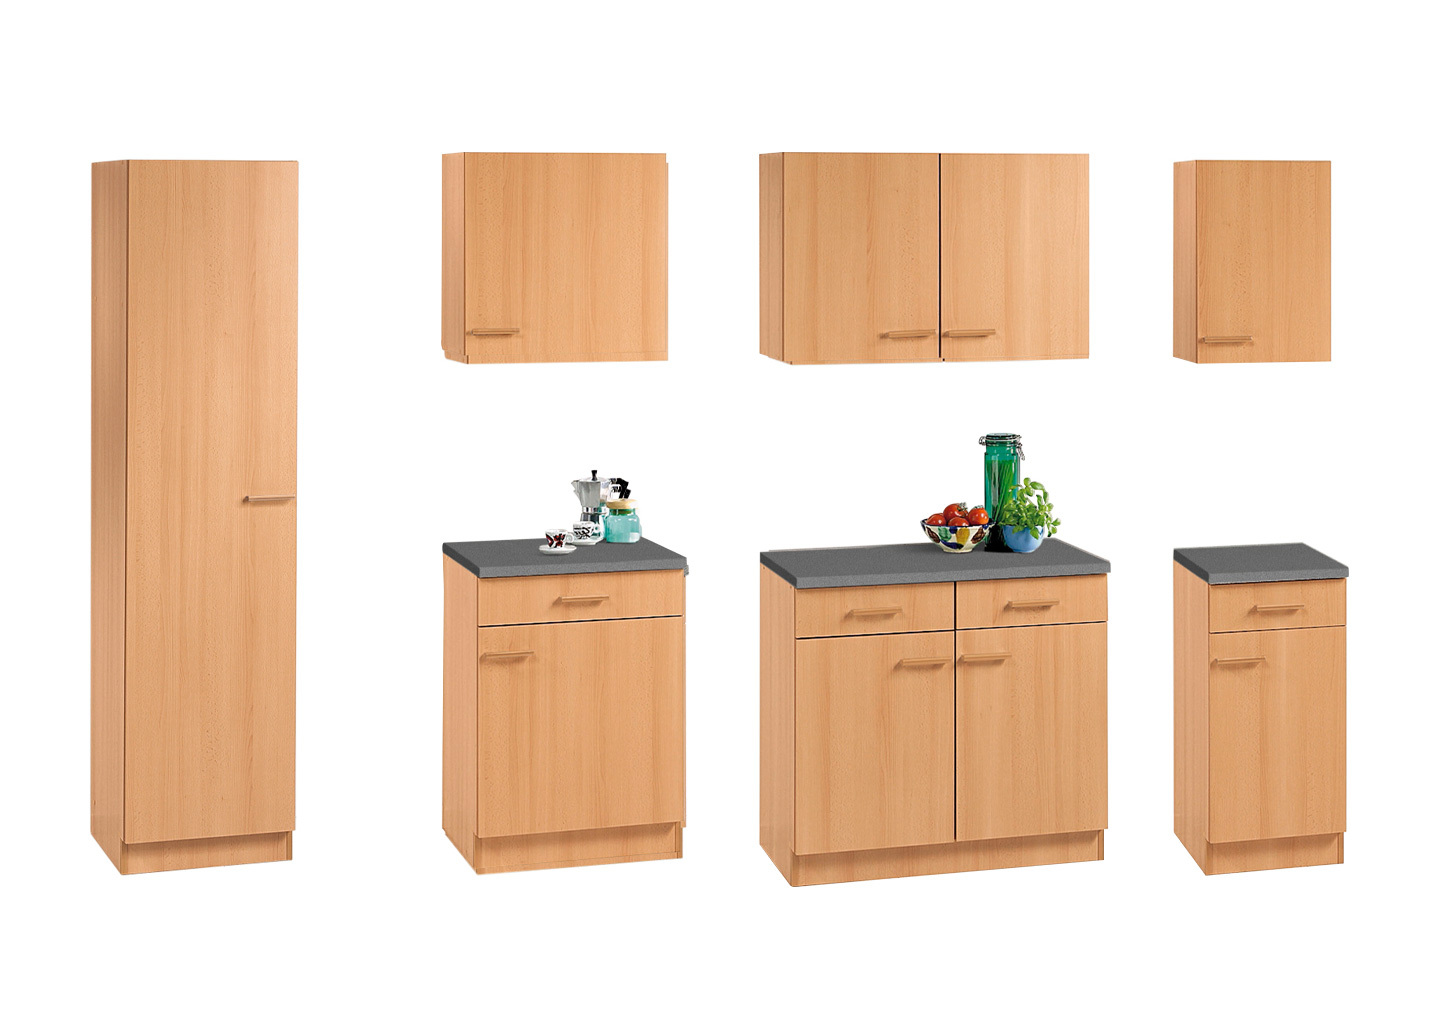 Küchenmöbel mit melaminharzbeschichteter Oberfläche, Seitenschrank, Tiefe 58 cm, Buche von BADER